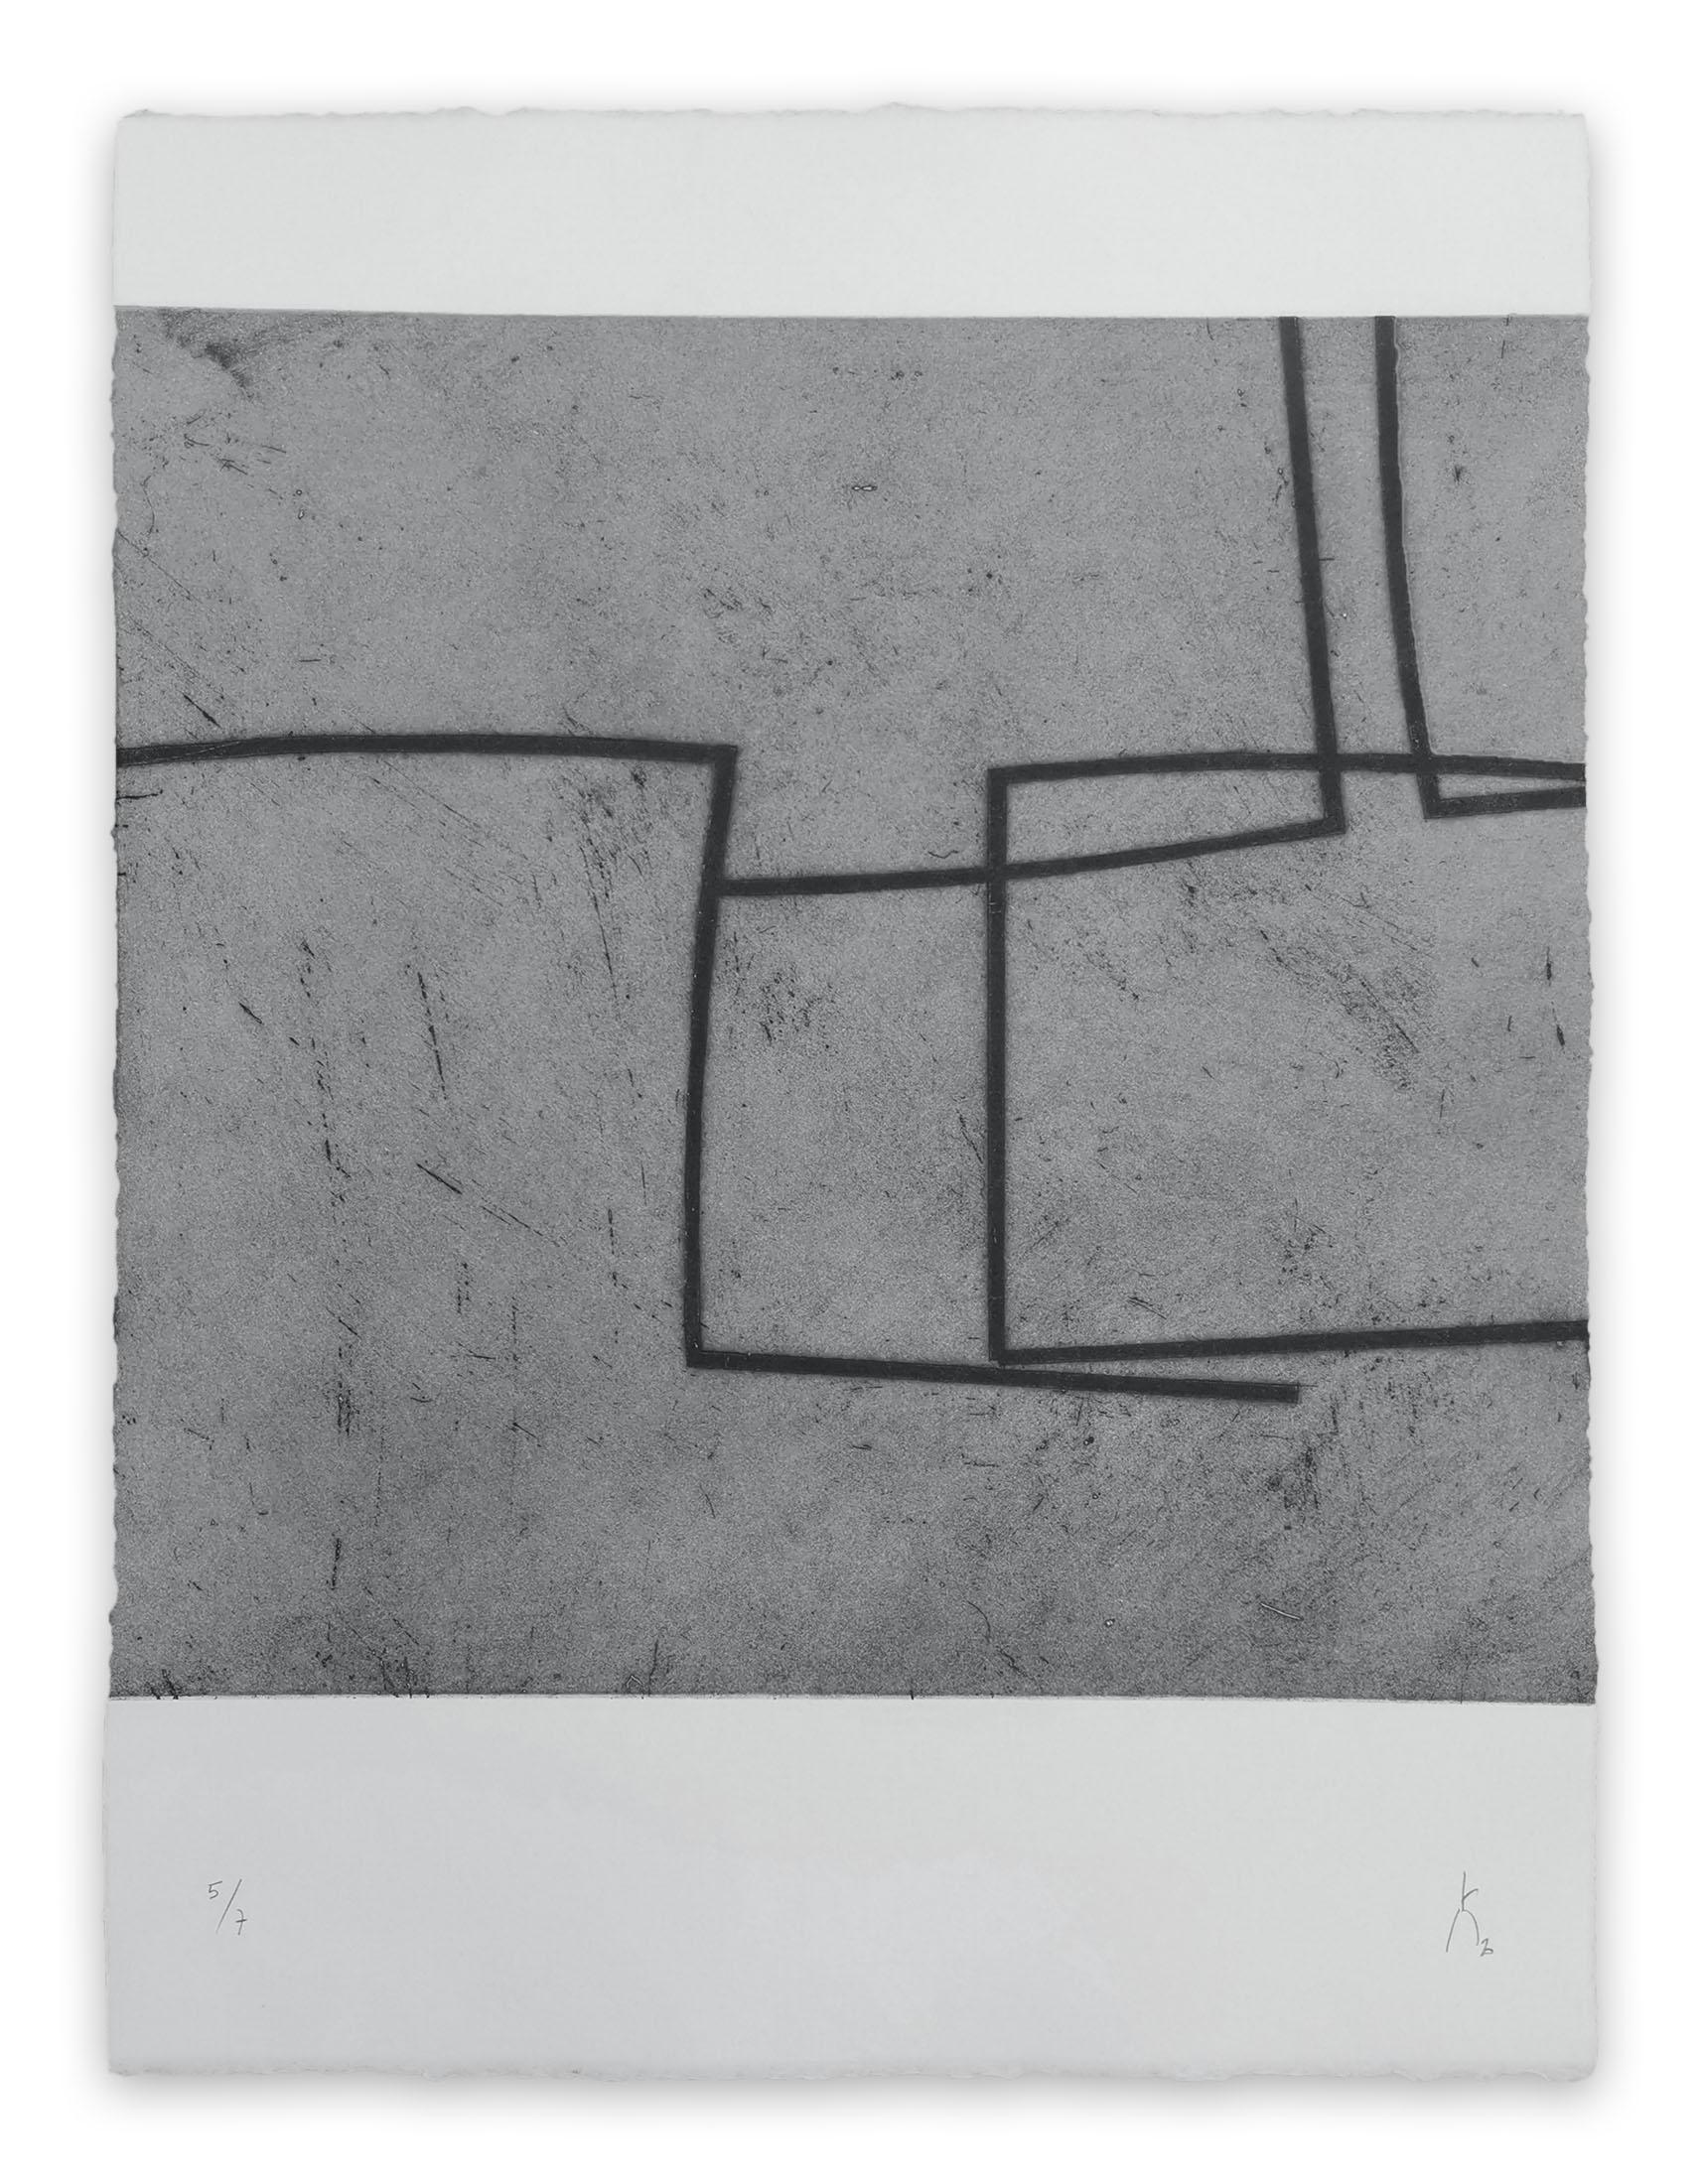 Pierre Muckensturm Abstract Print – 203R0945 (Abstrakter Druck)